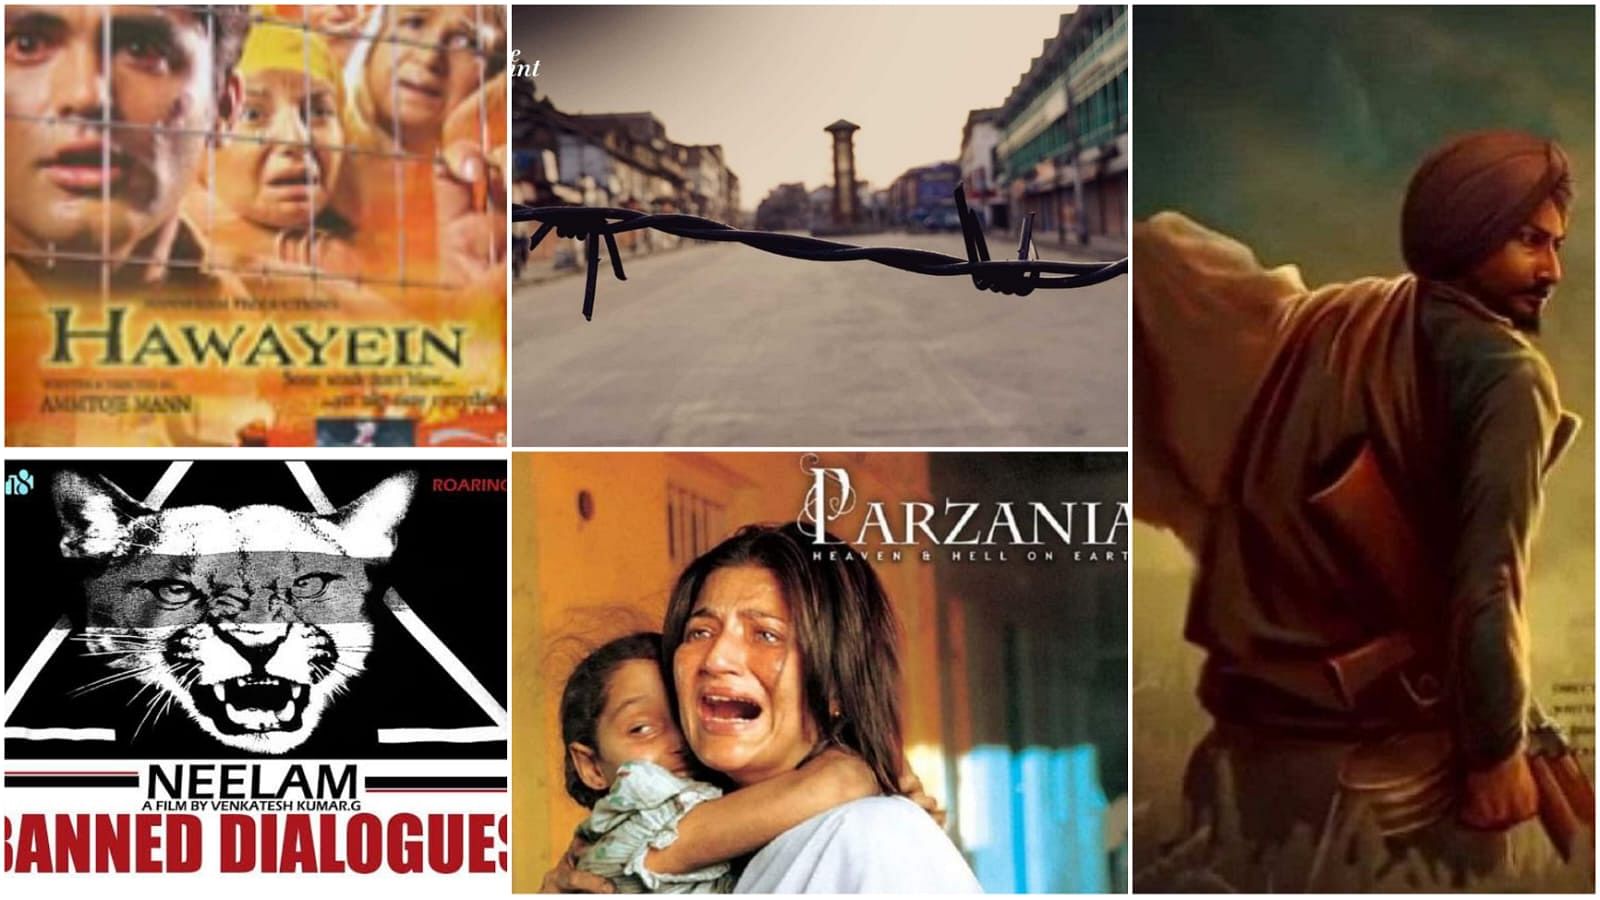 <div class="paragraphs"><p>फिराक़ से लेकर परज़ानिया तक, क्यों किया गया इन 10 फिल्मों को बैन,जानिए </p></div>